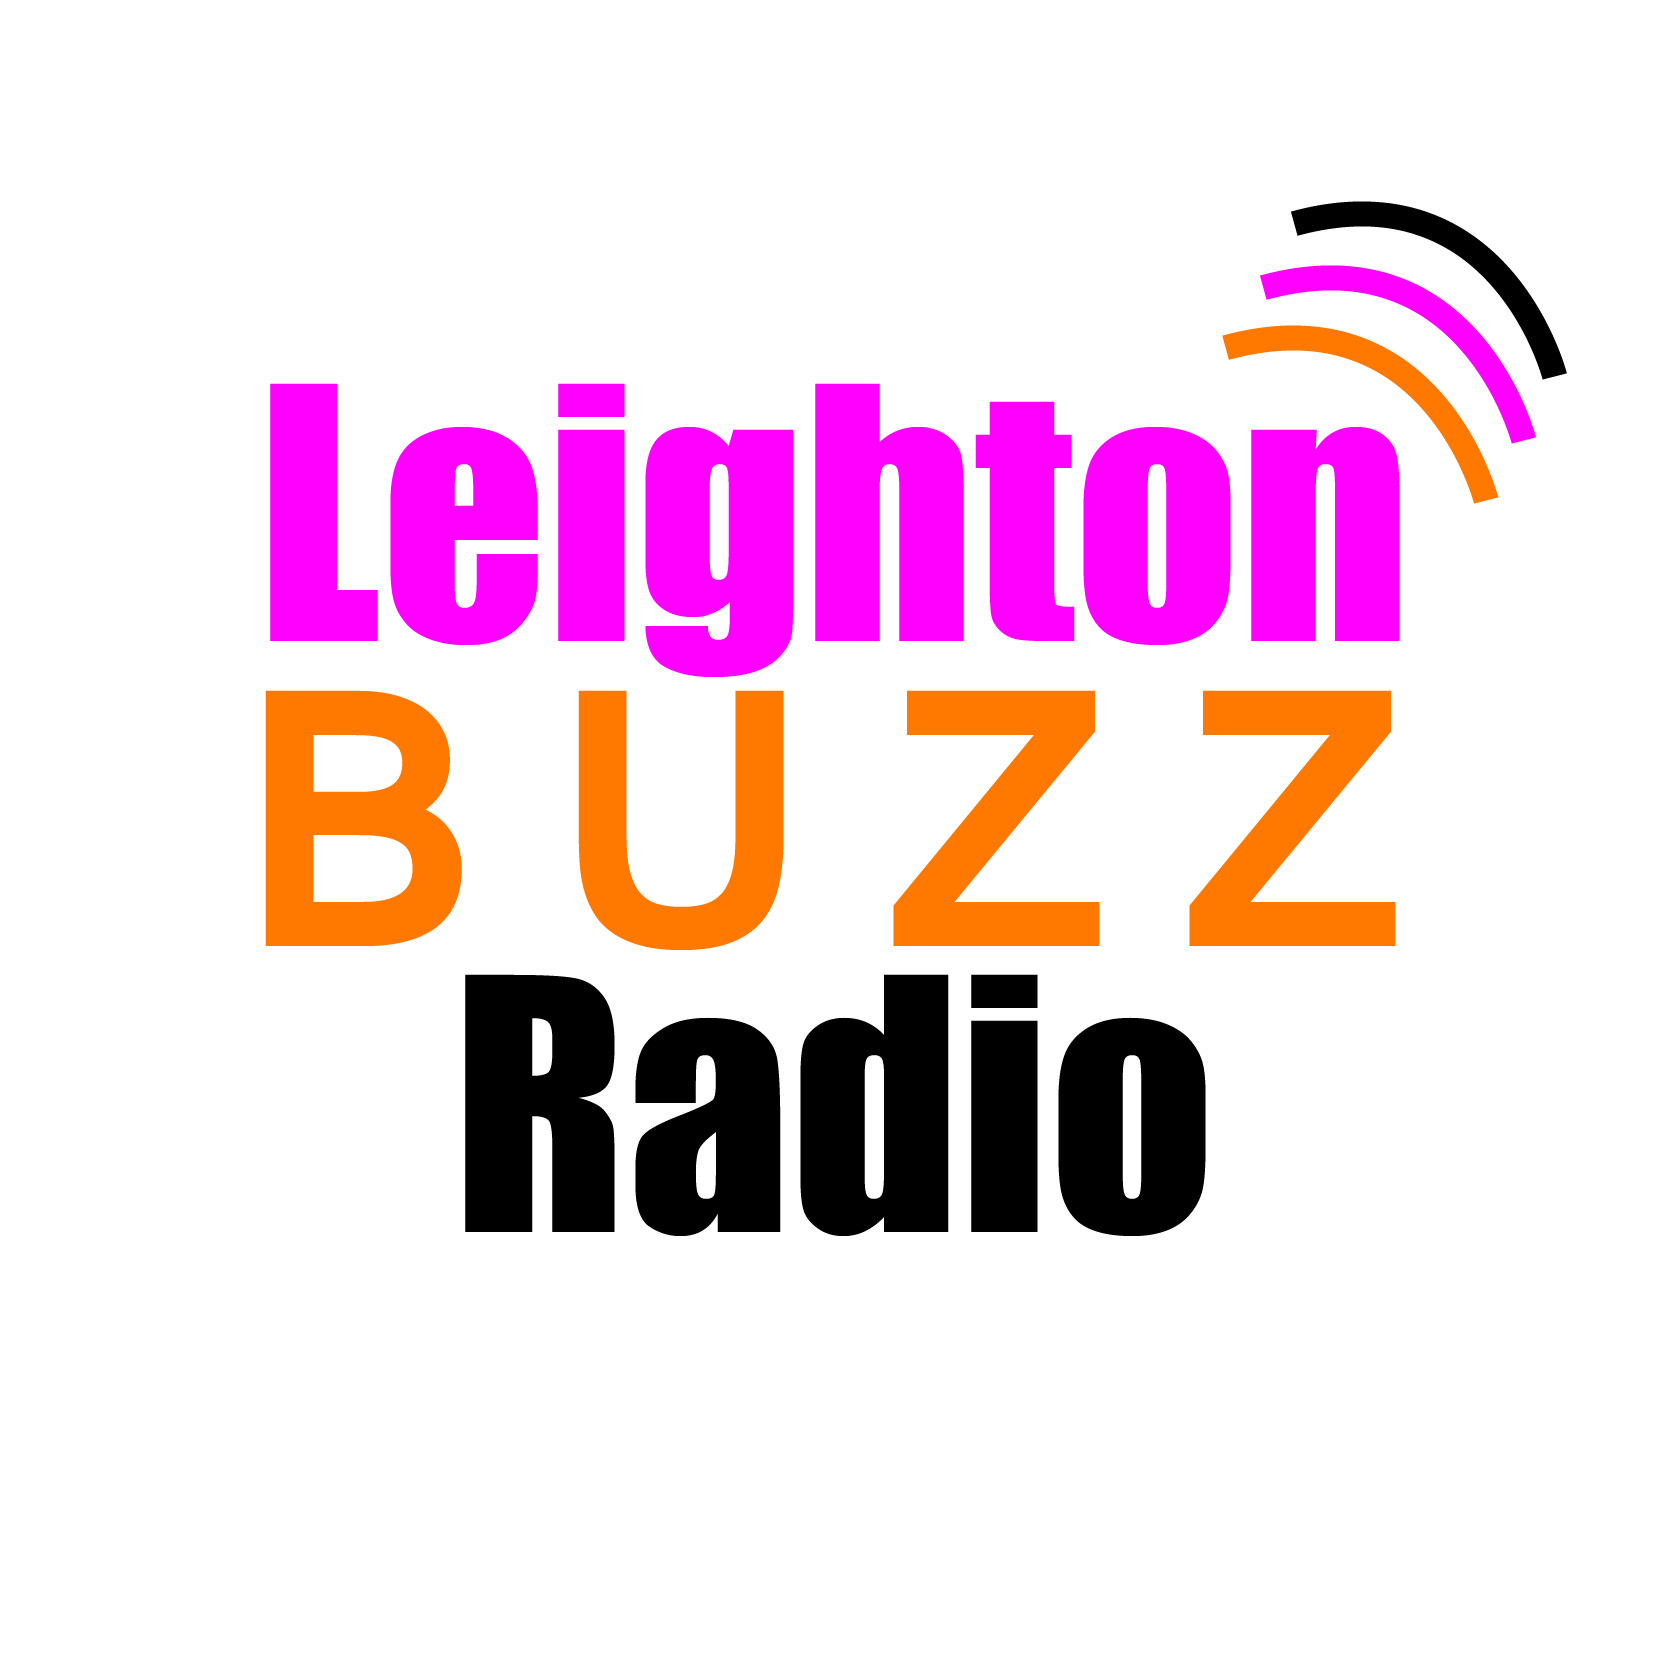 Leighton Buzz Radio logo